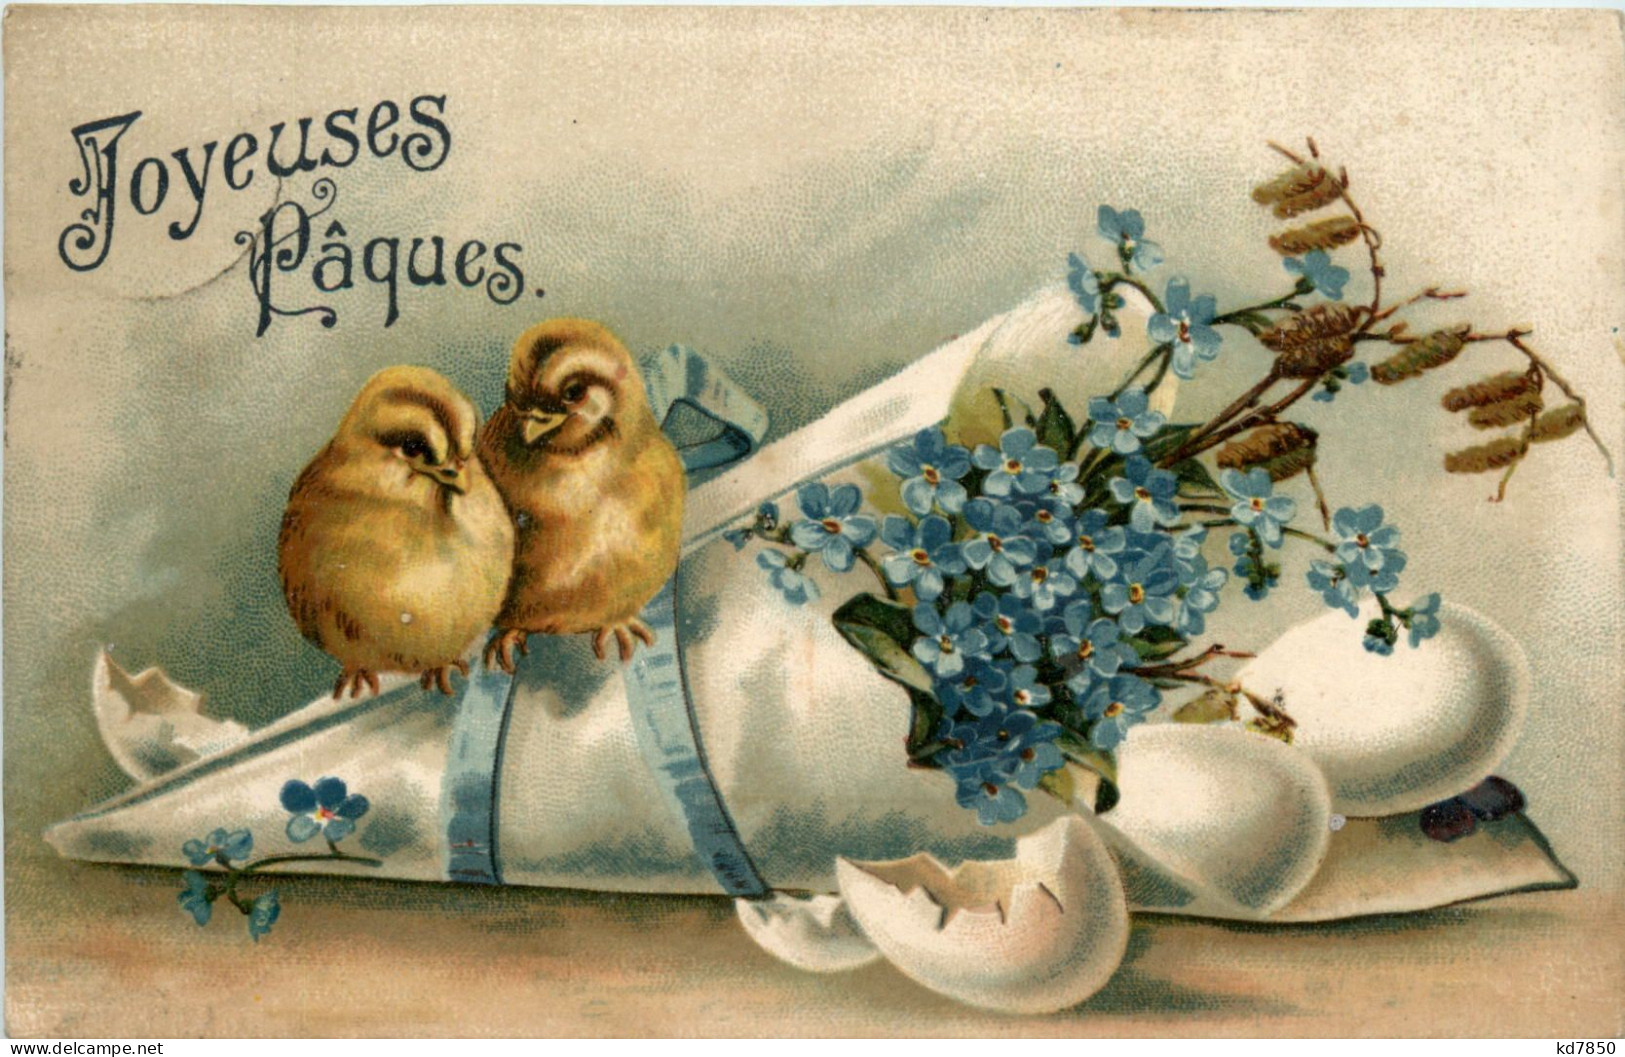 Joyeuses Paques - Pascua